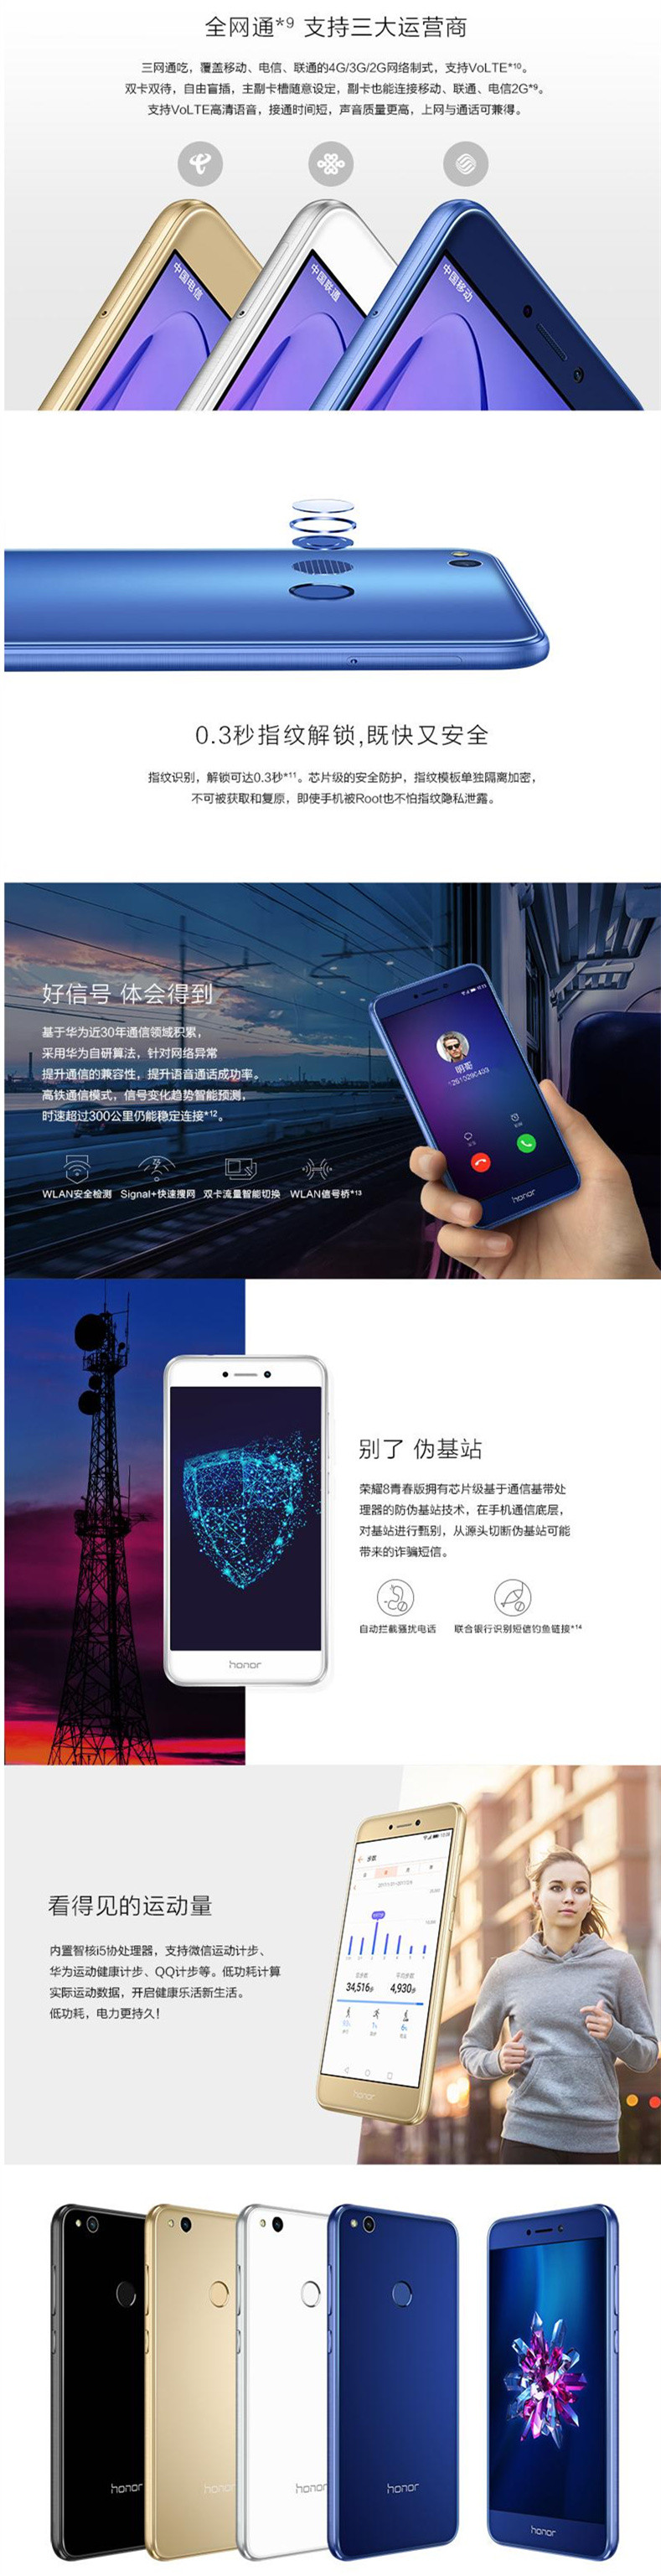 【赣州馆】honor/荣耀 荣耀8 64G青春版全网通4G智能手机官方授权正品